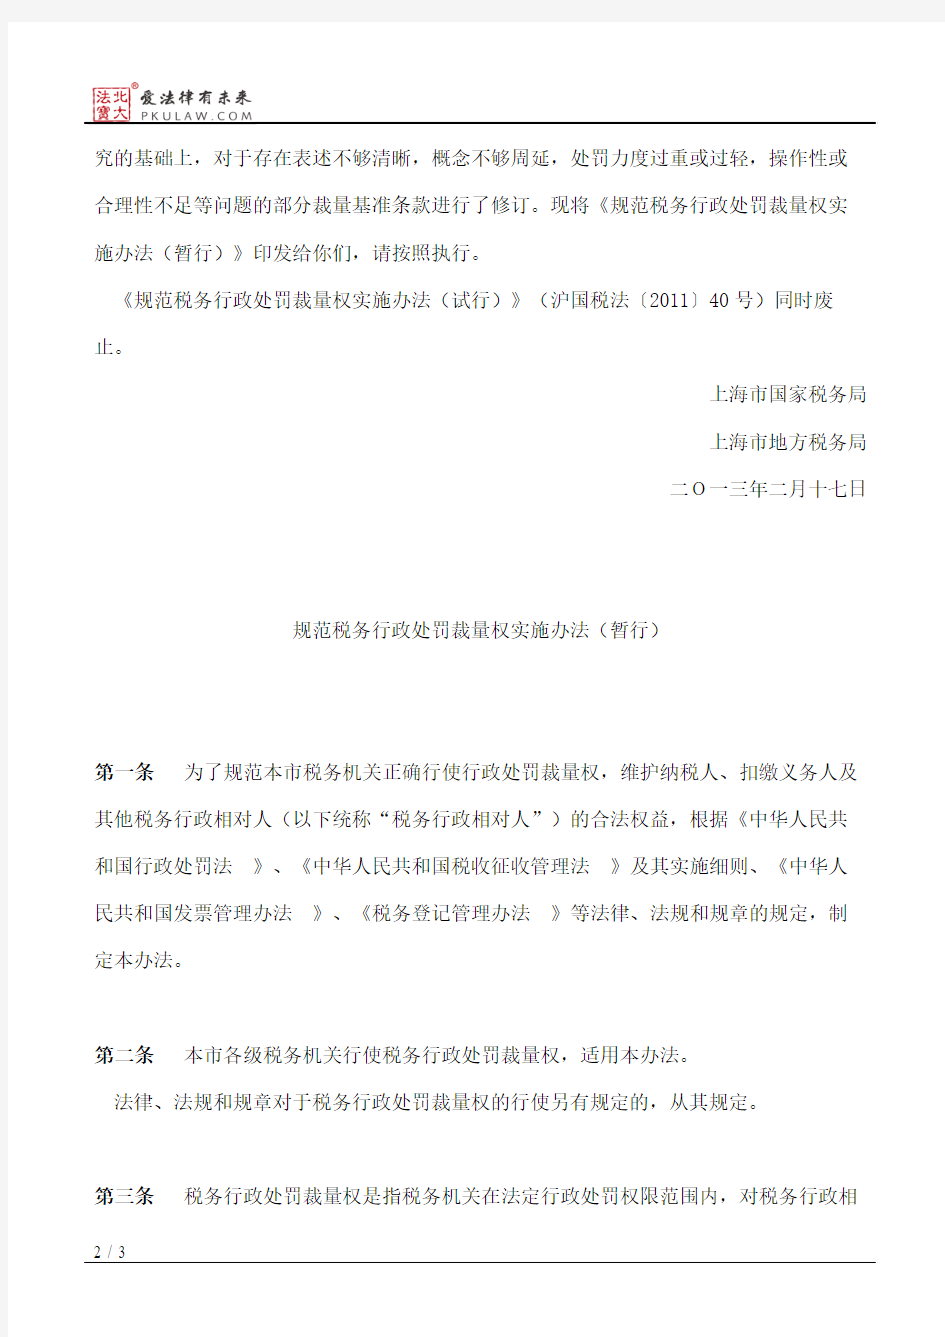 上海市国家税务局、上海市地方税务局关于印发《规范税务行政处罚